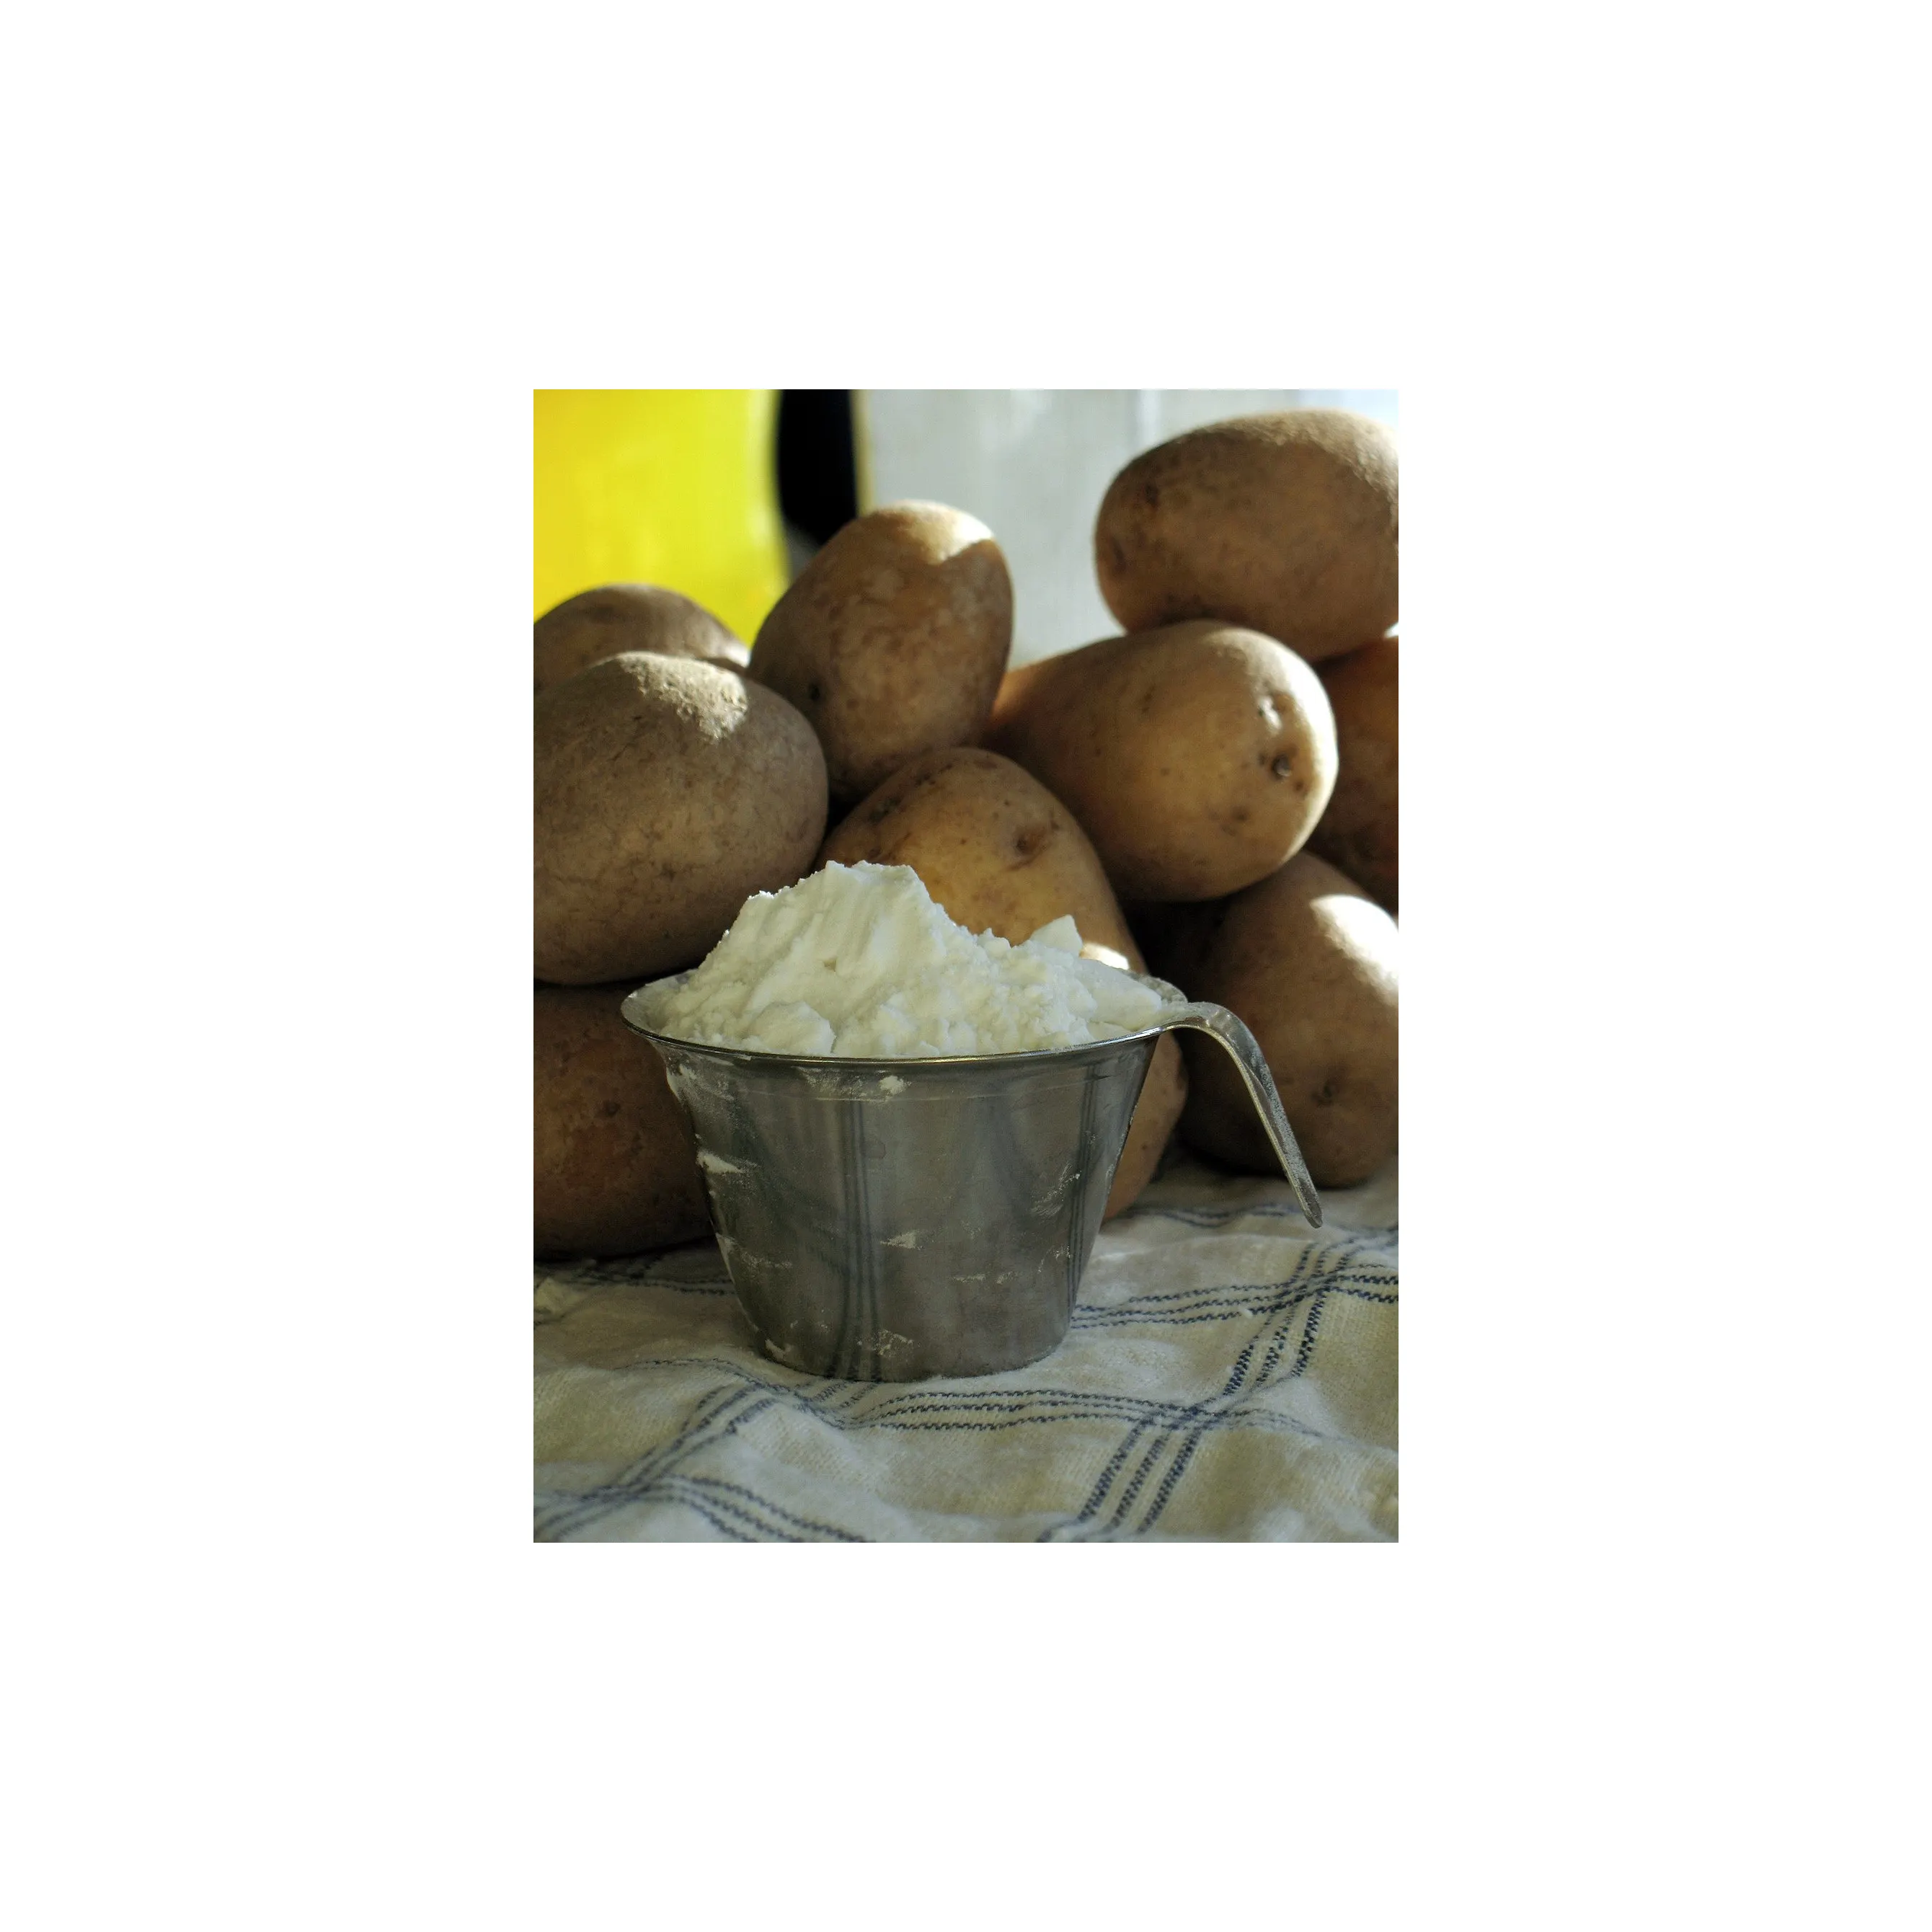 Nişasta patates/mısır nişastası/patates unu yüksek kalitede üretim fiyatı